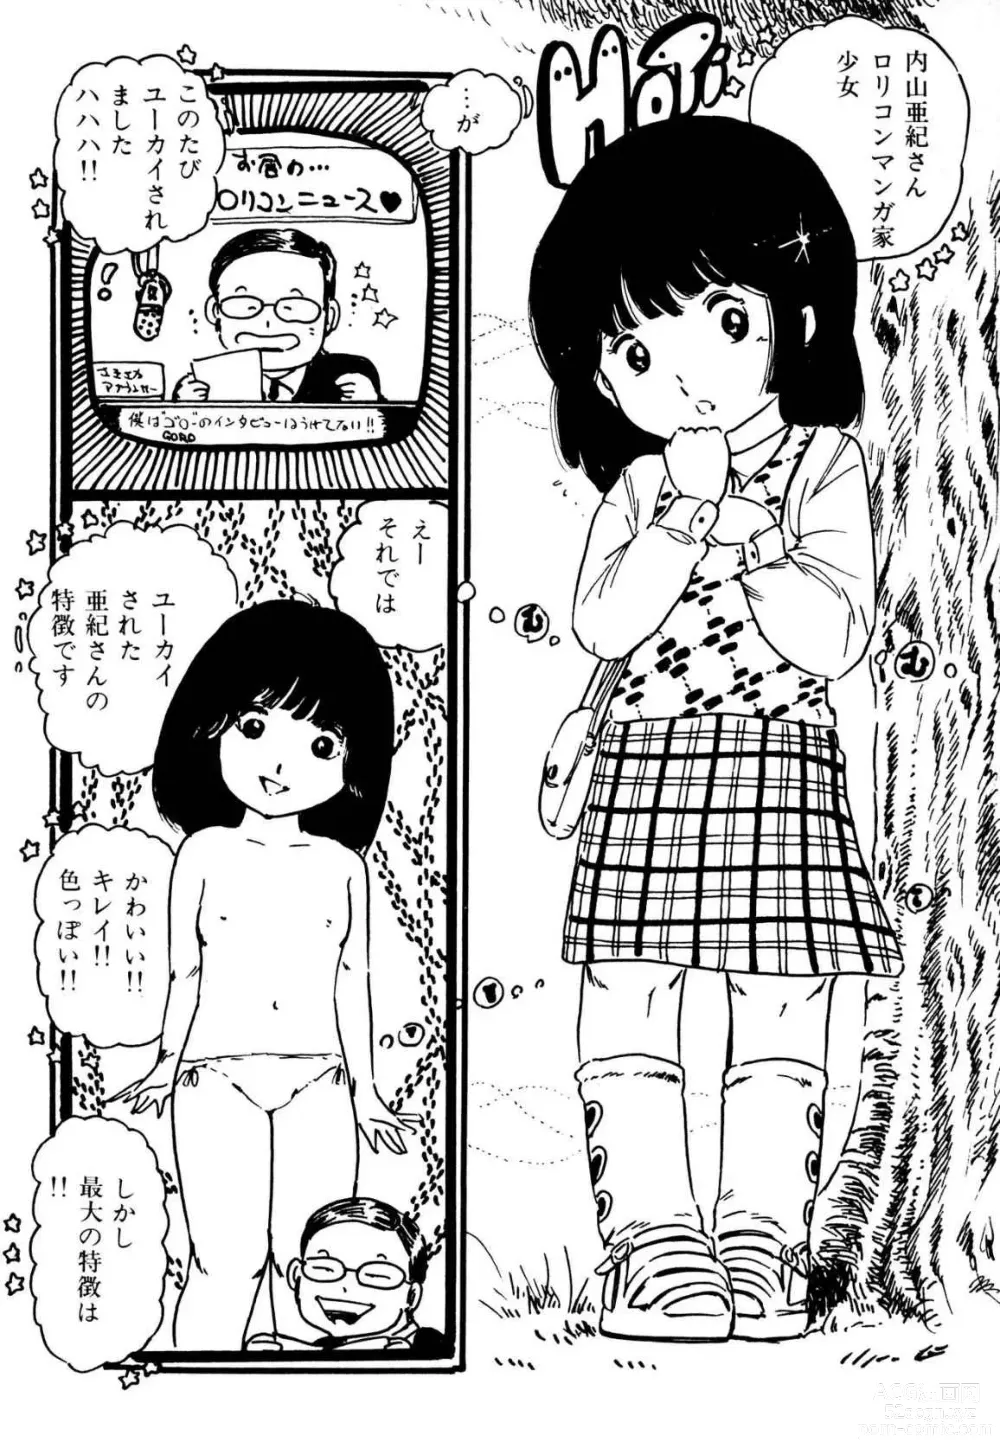 Page 192 of manga Koisuru Yousei